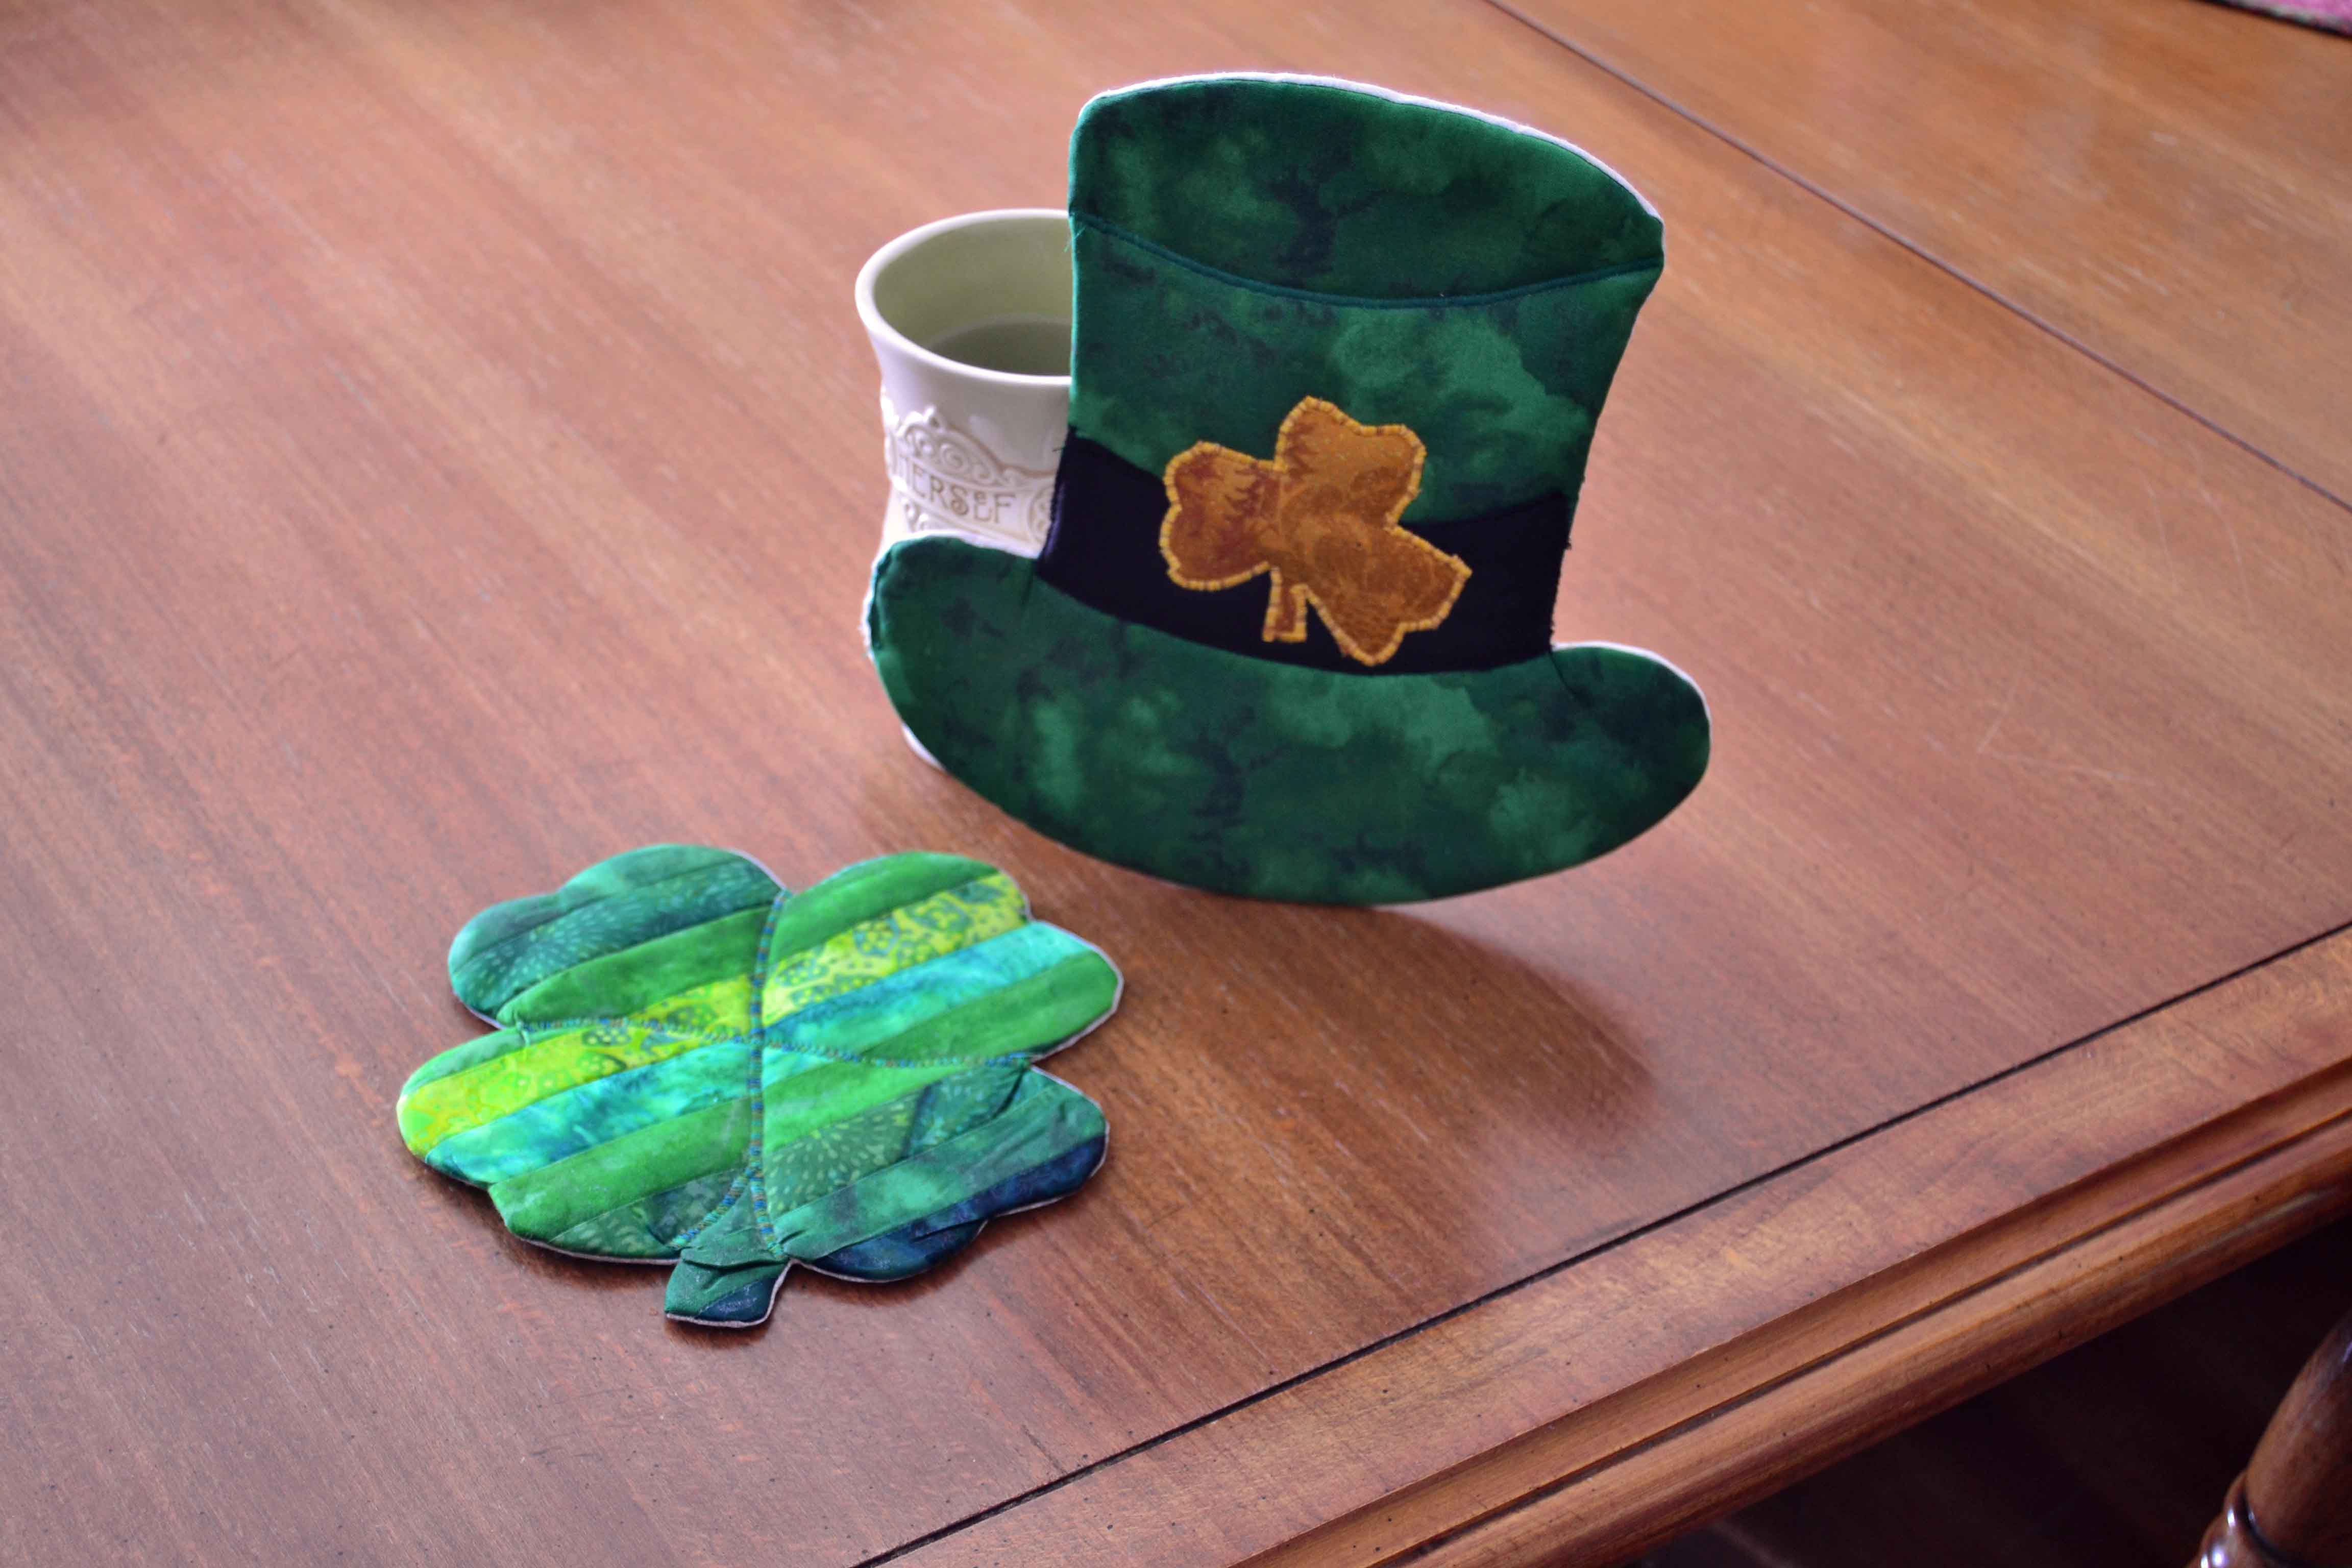 Irish tea time, Irish inspired pot holders